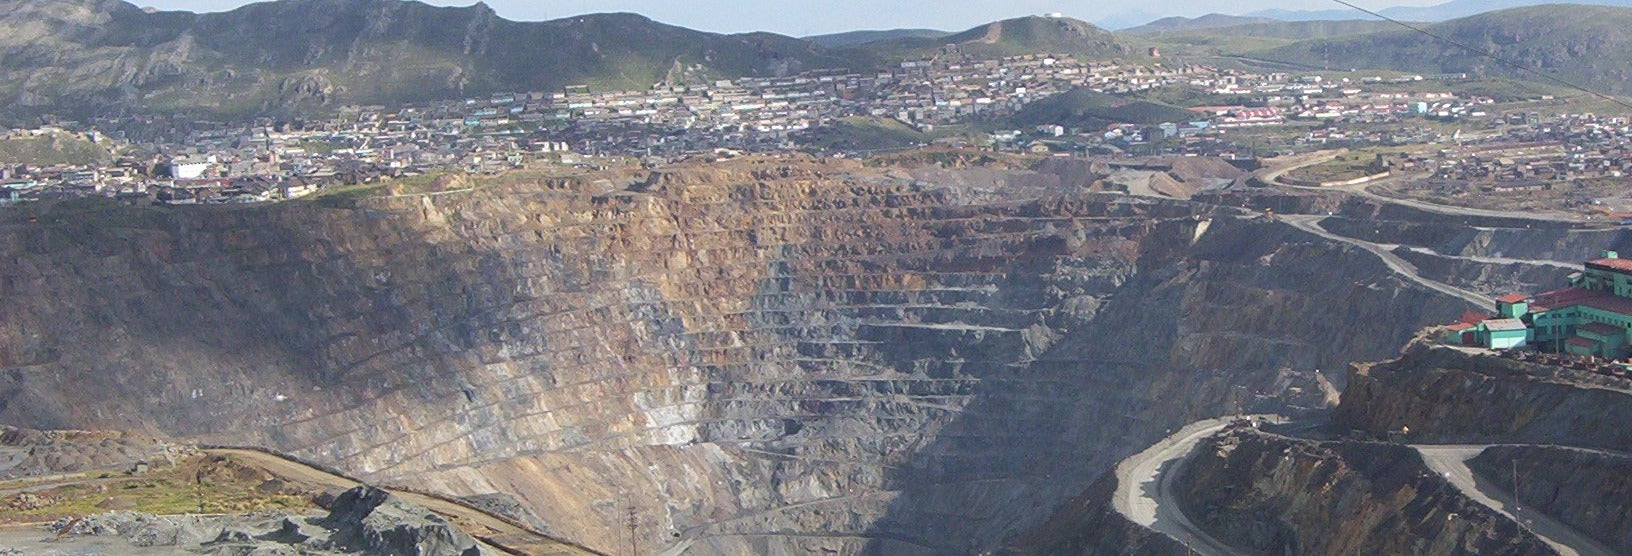 Cerro de Pasco